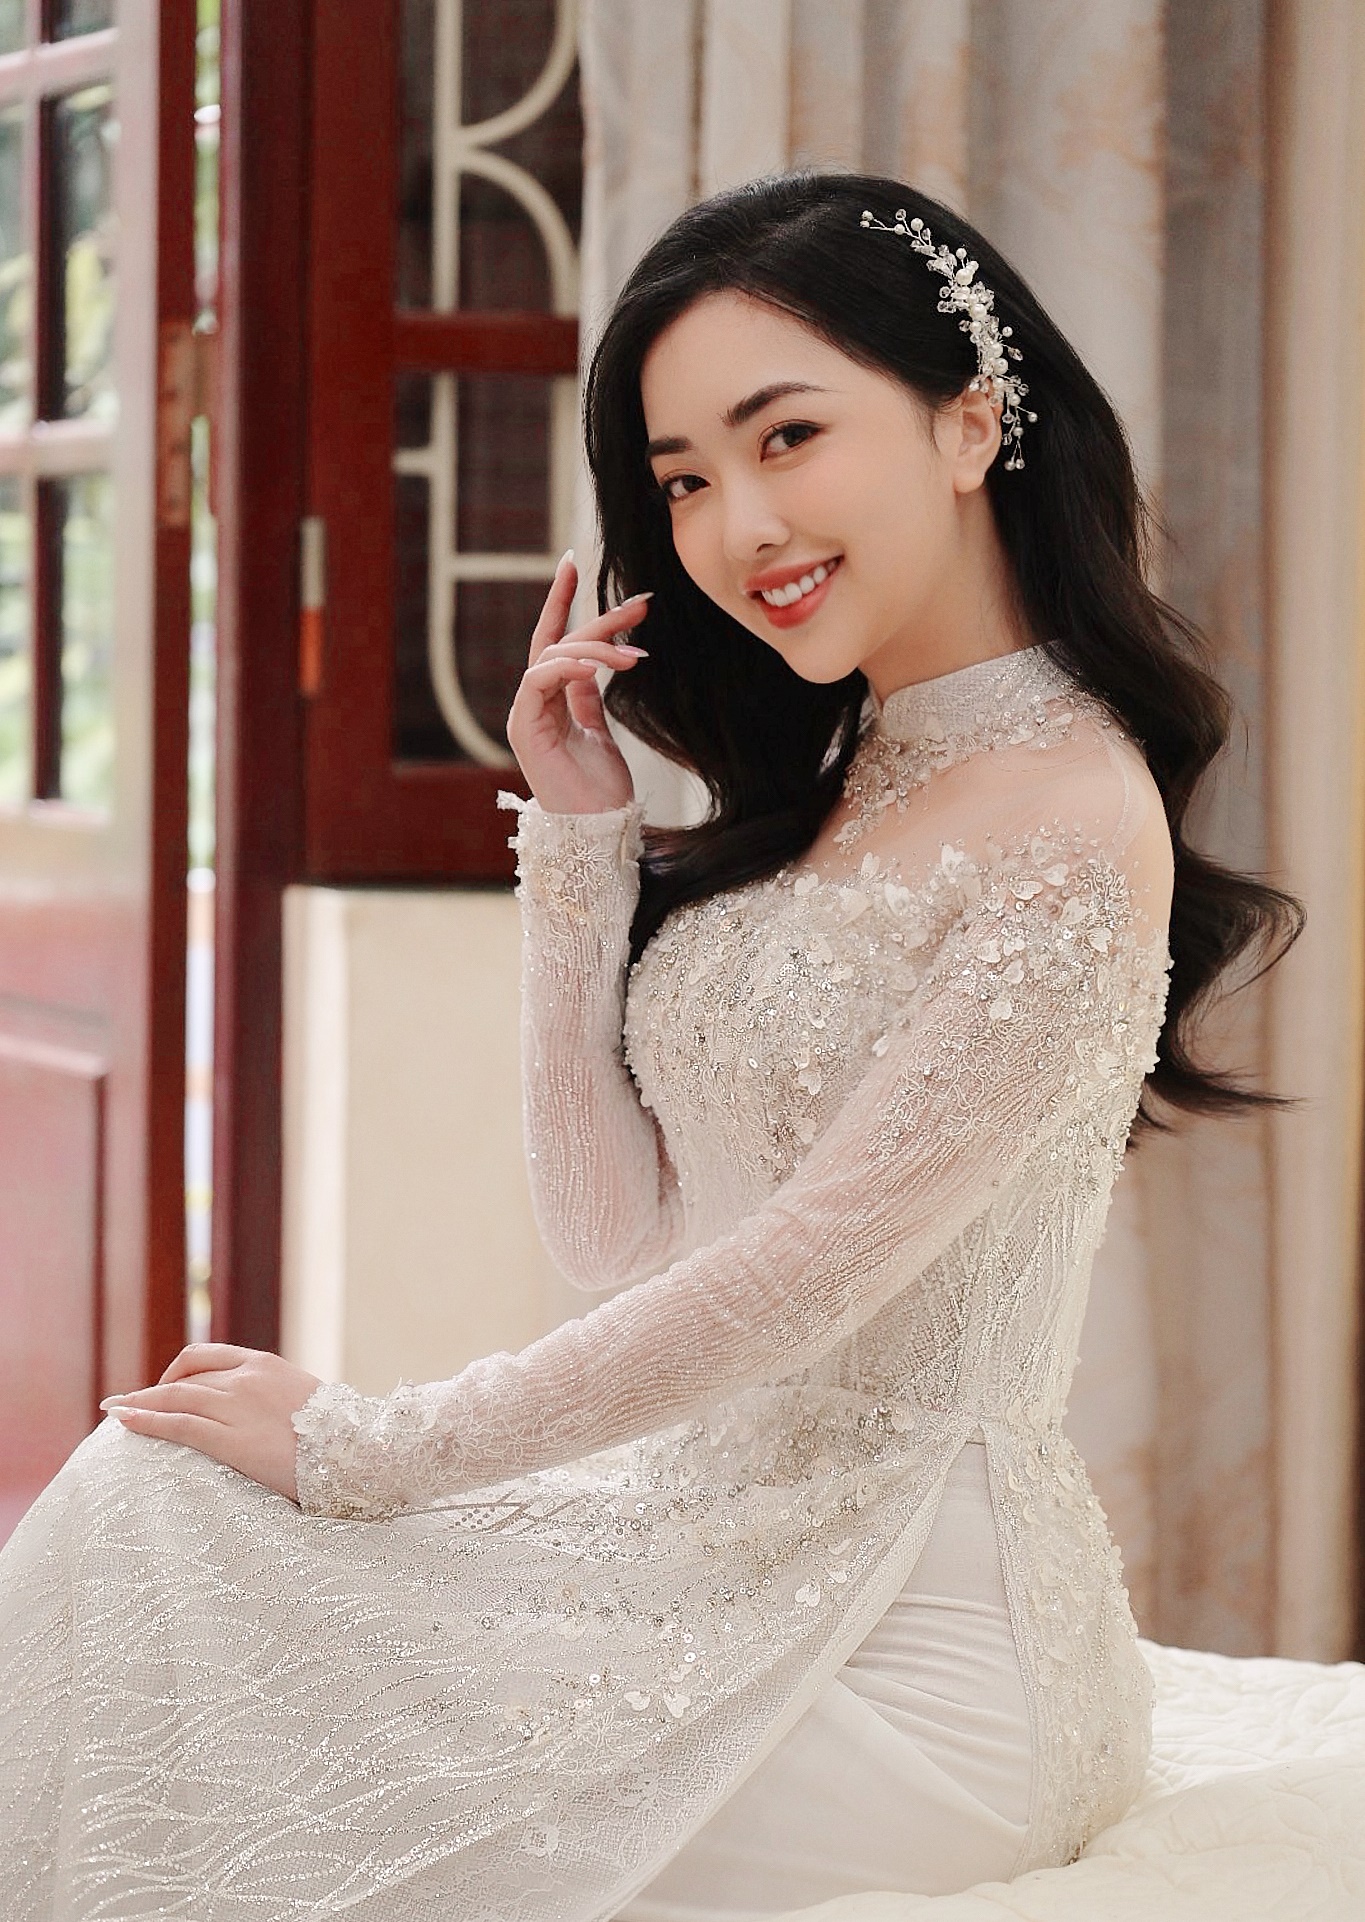 Nhan sắc cô dâu của Chinh đen: Xinh không kém hoa hậu, cách ly hoàn toàn thị phi-3